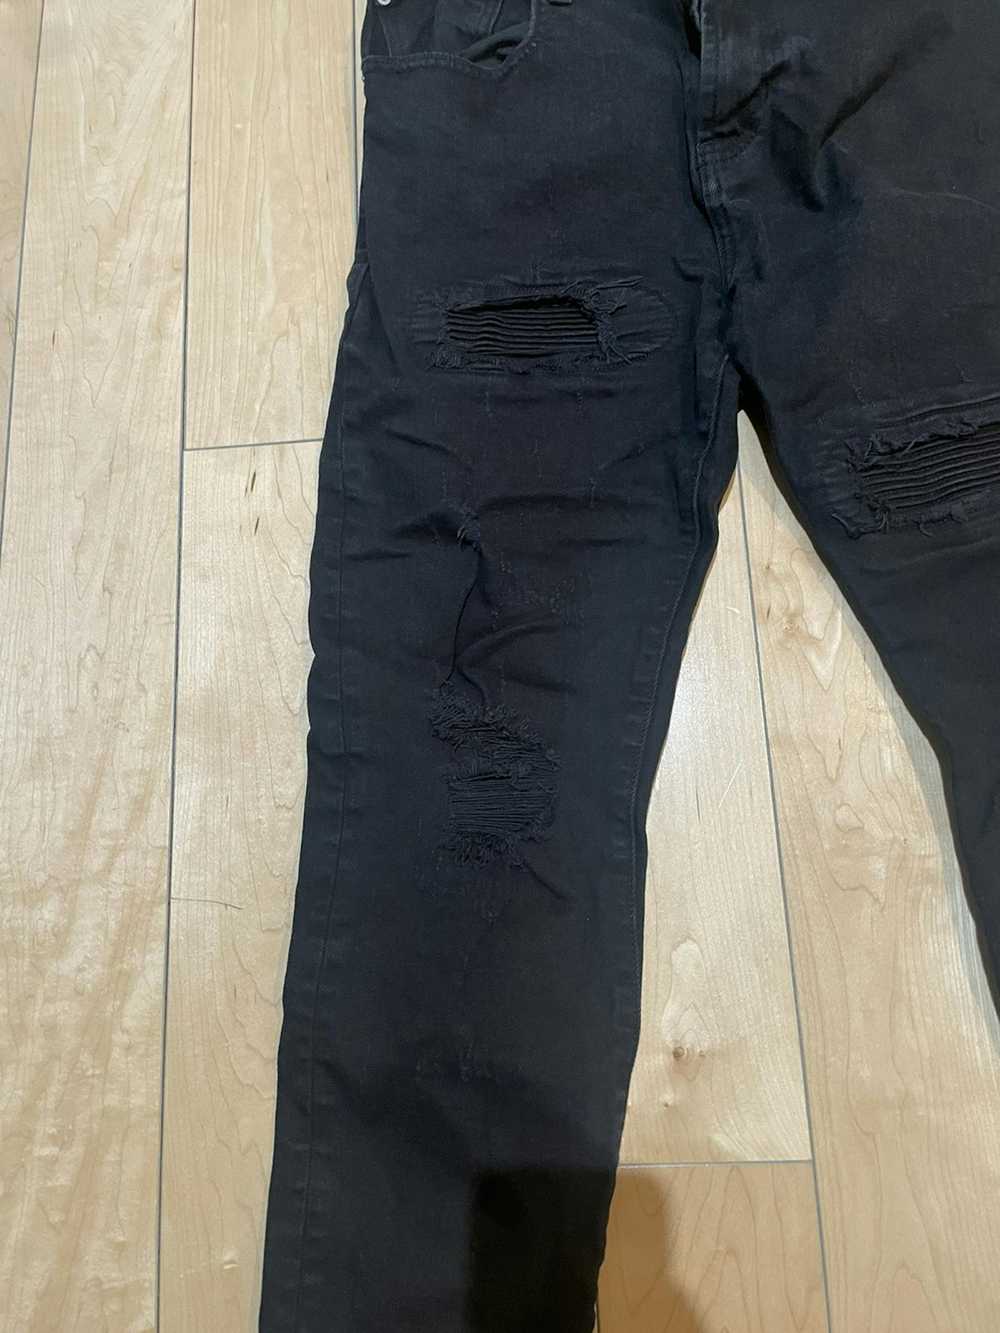 Pacsun Pacsun black slim taper jeans size 30x32 - image 3